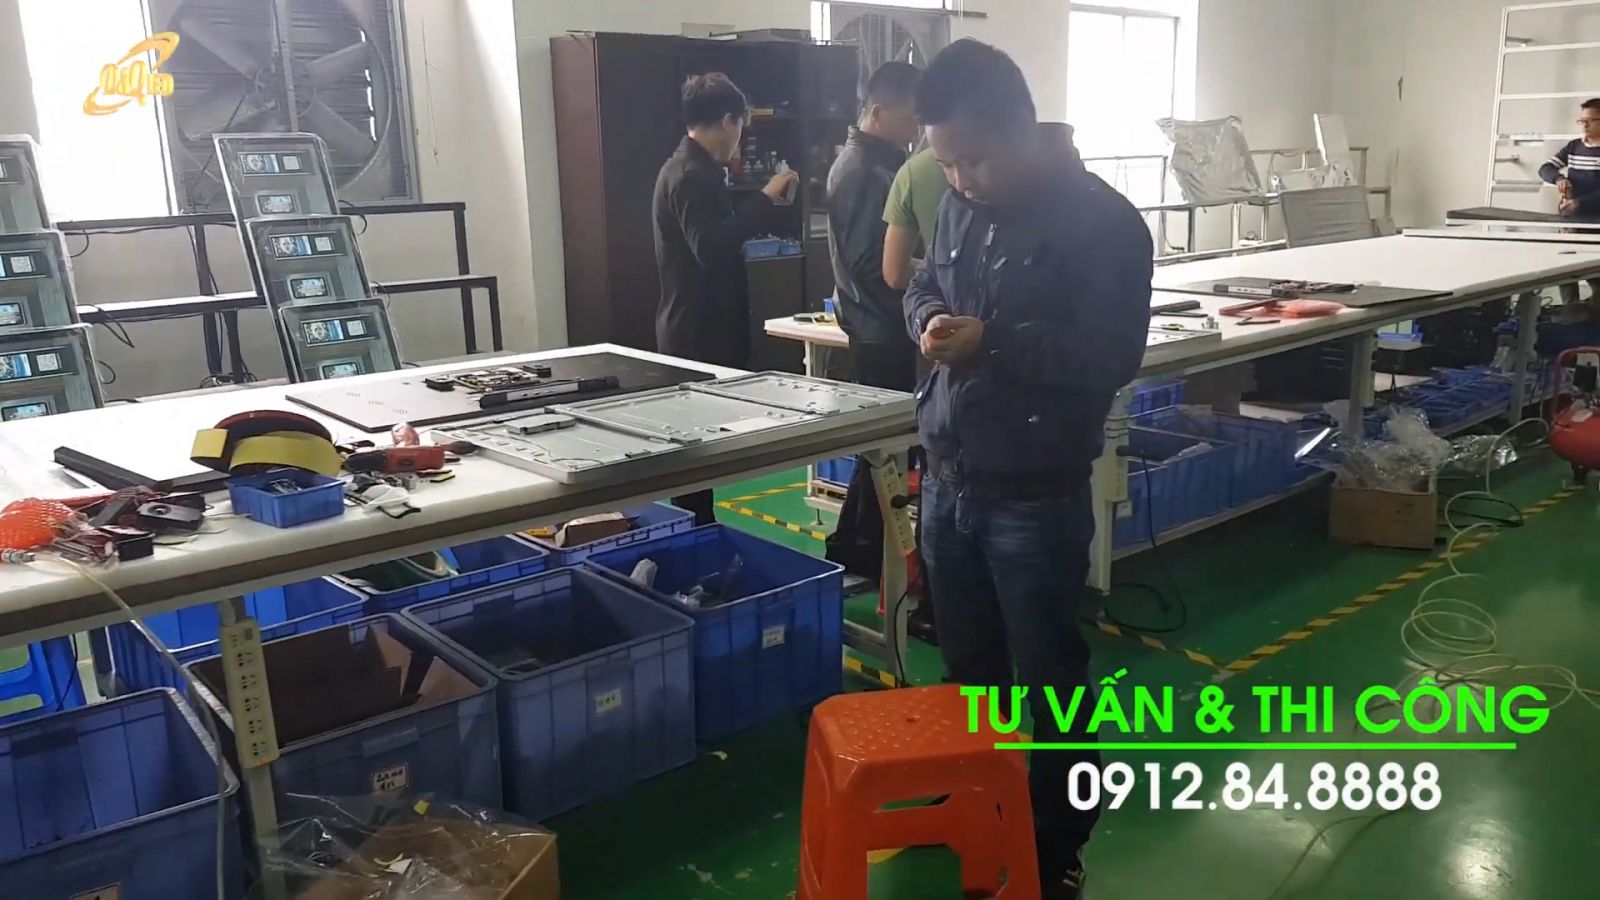 Tham Quan Xưởng LẮp ráp LCD quảng cáo của Công ty LEd D&Q việt Nam.